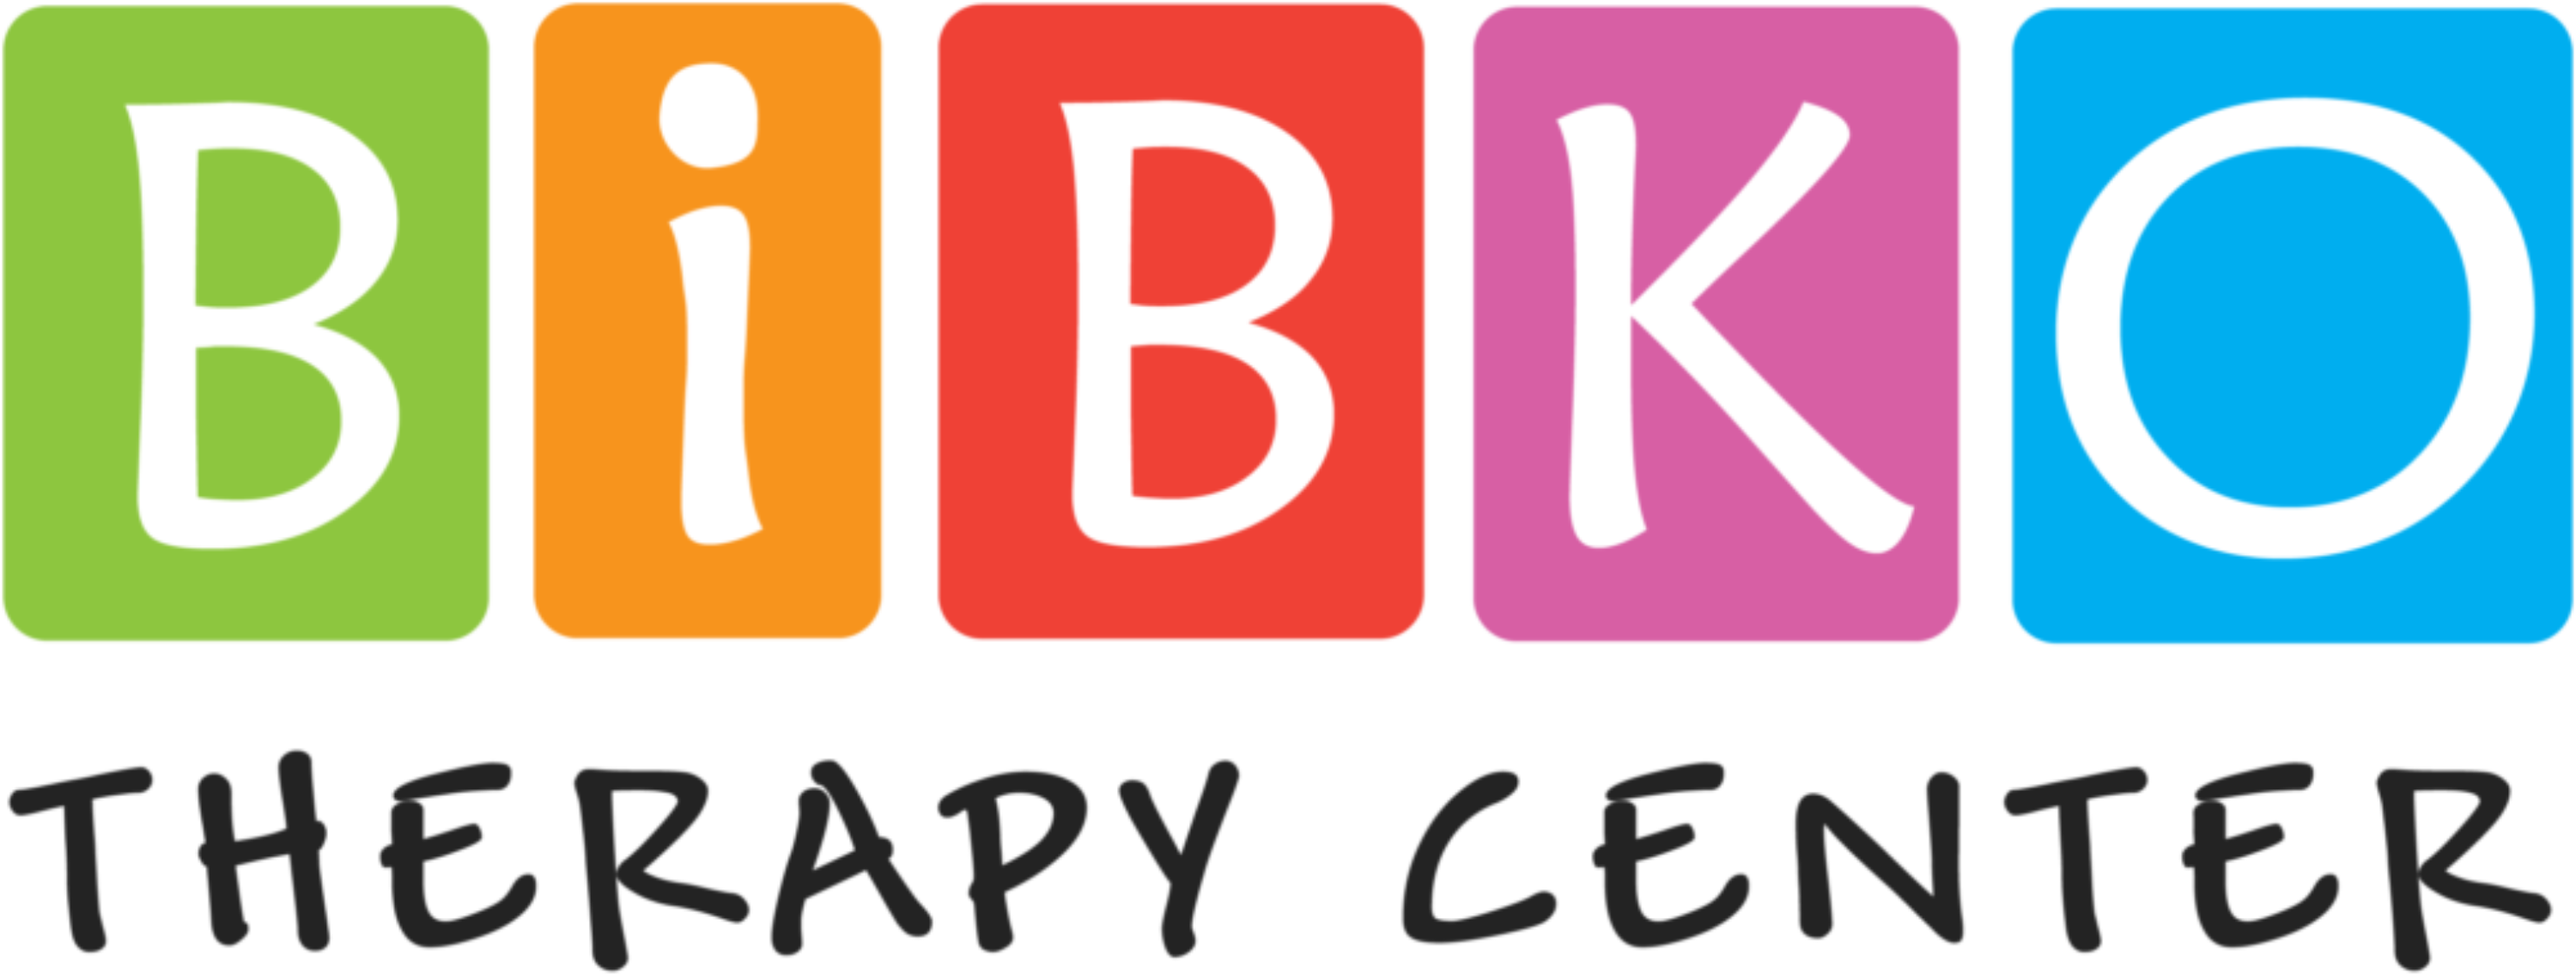 Bibko Therapy Center – Terapeutické centrum v Seredi